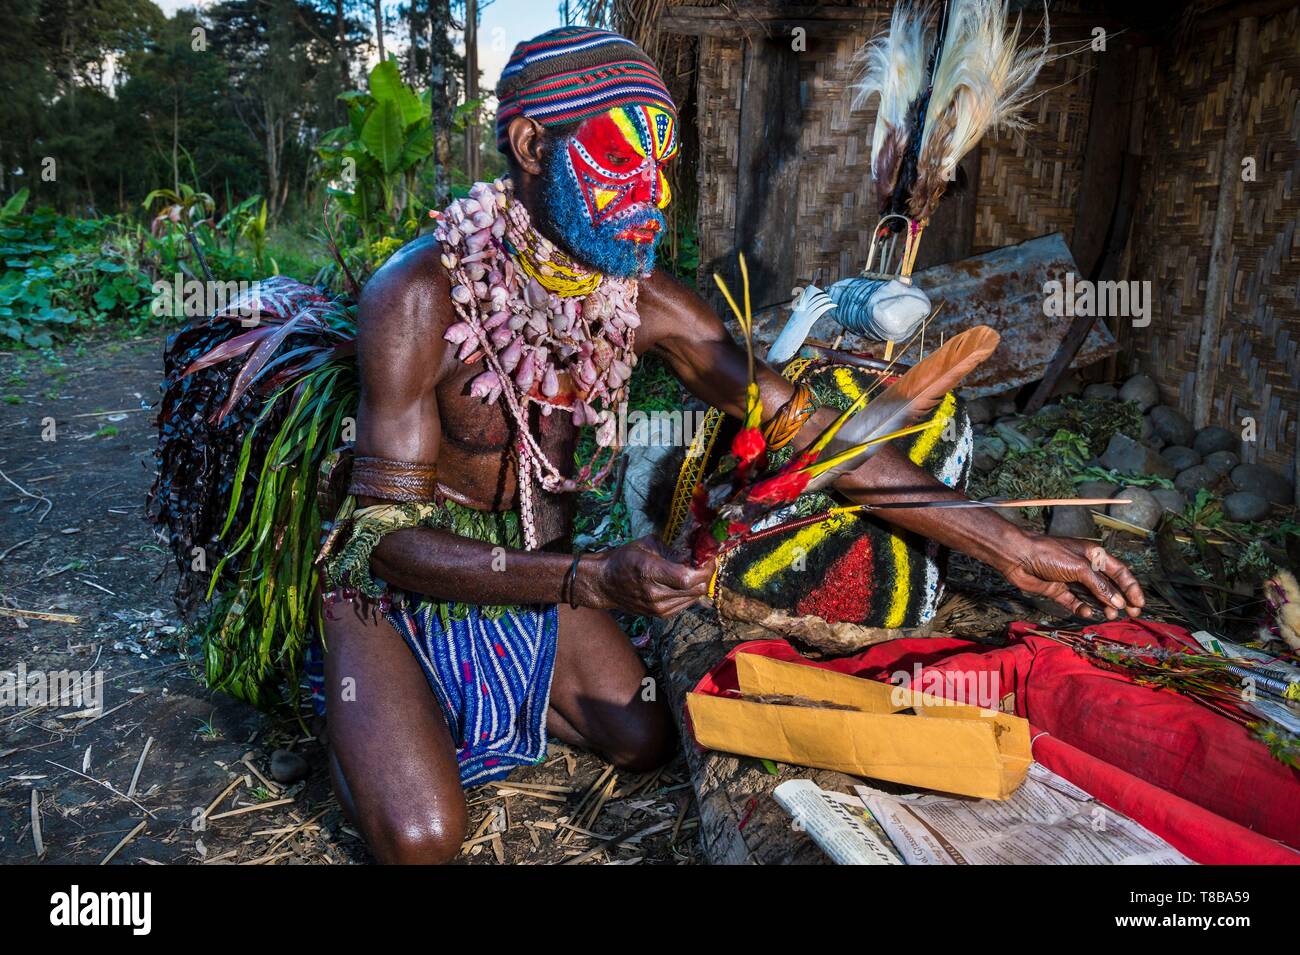 La Papouasie-Nouvelle-Guinée, l'ouest des Highlands Province, Région d'Nebilyer Kaugel Tambul, Alkena village, danseuse au cours d'un sing-sing (danse traditionnelle) Banque D'Images